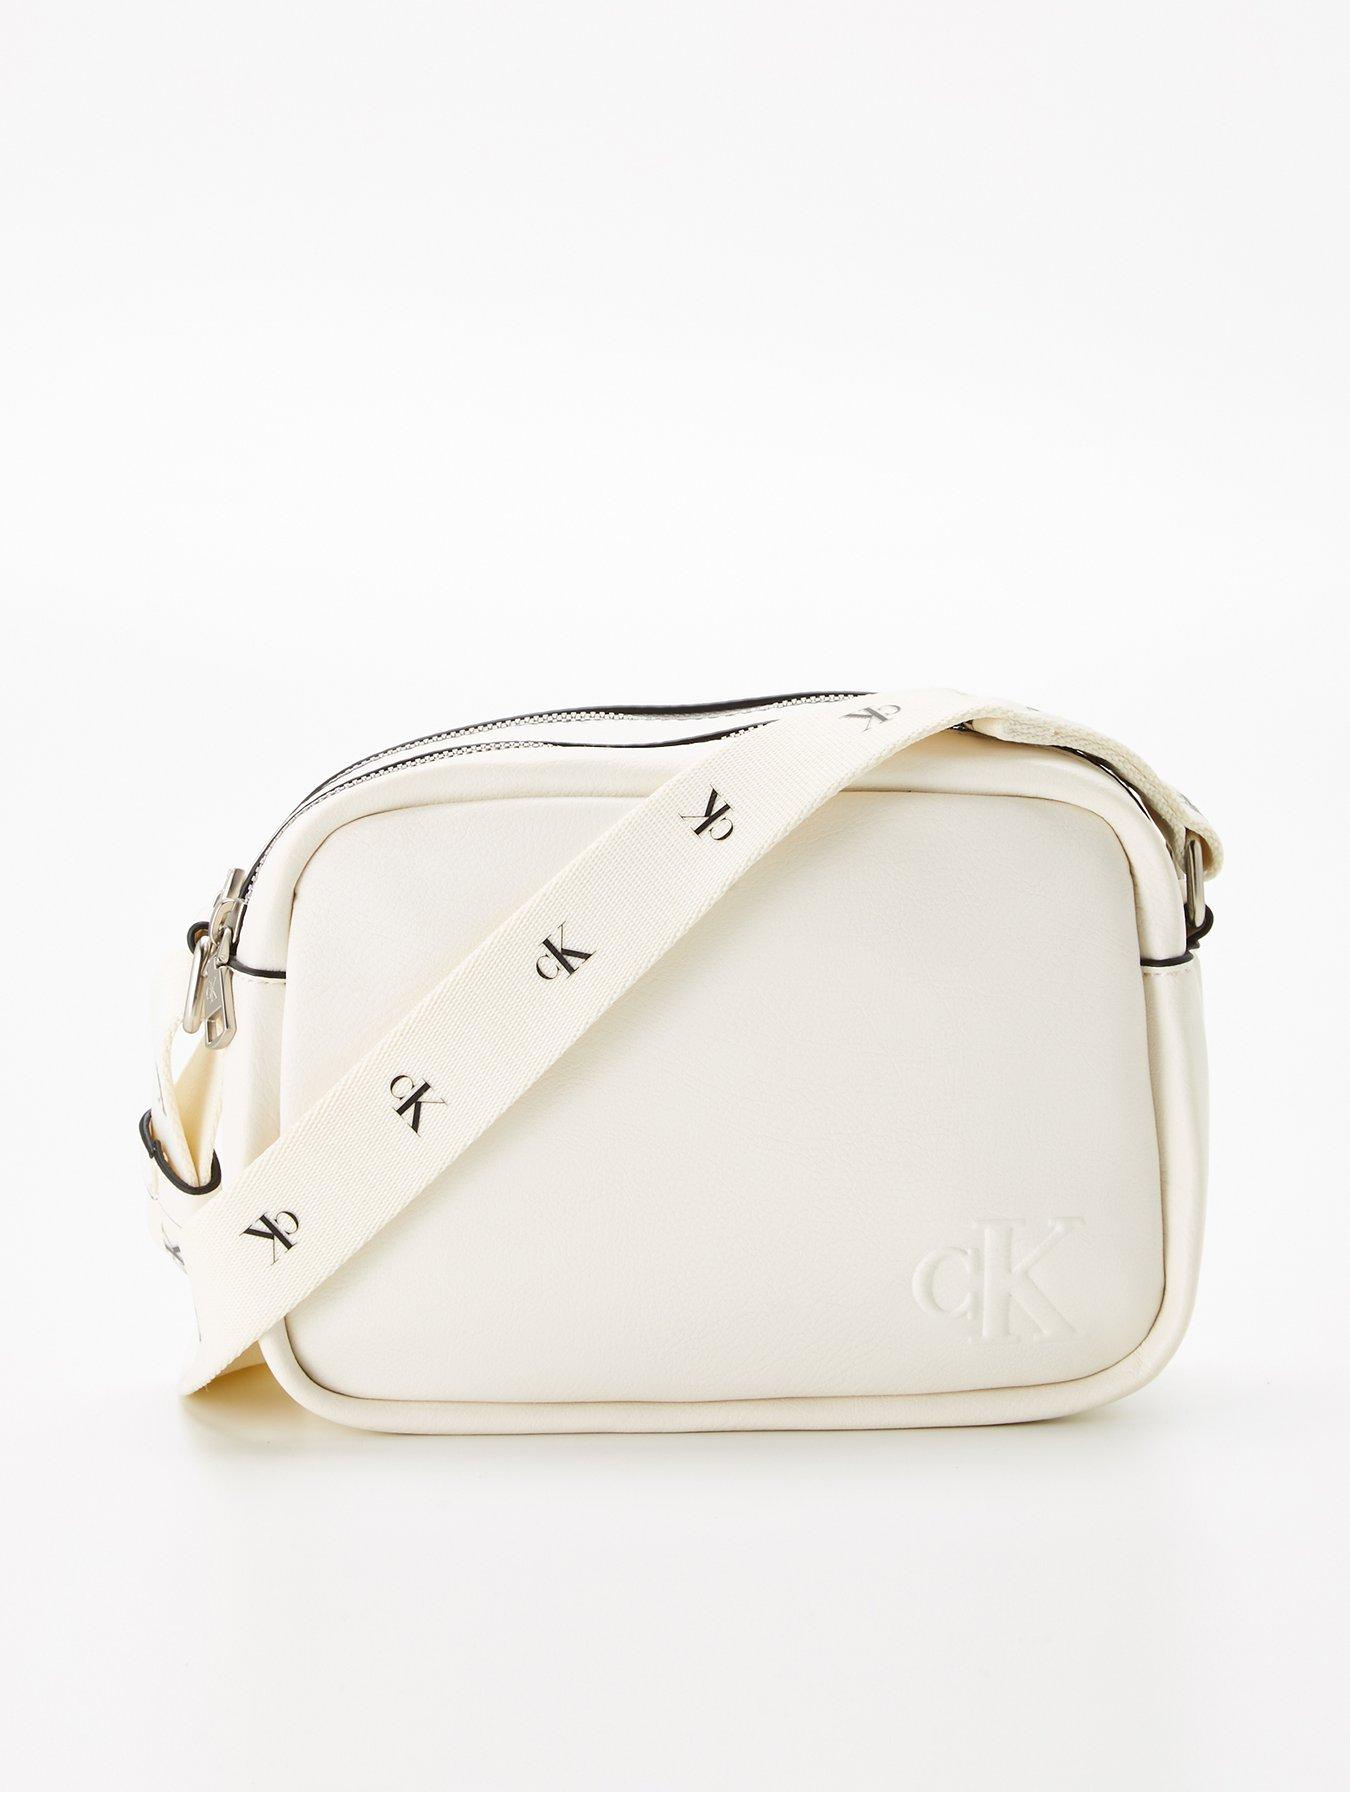 Calvin Klein Handbags, Bags & Purses